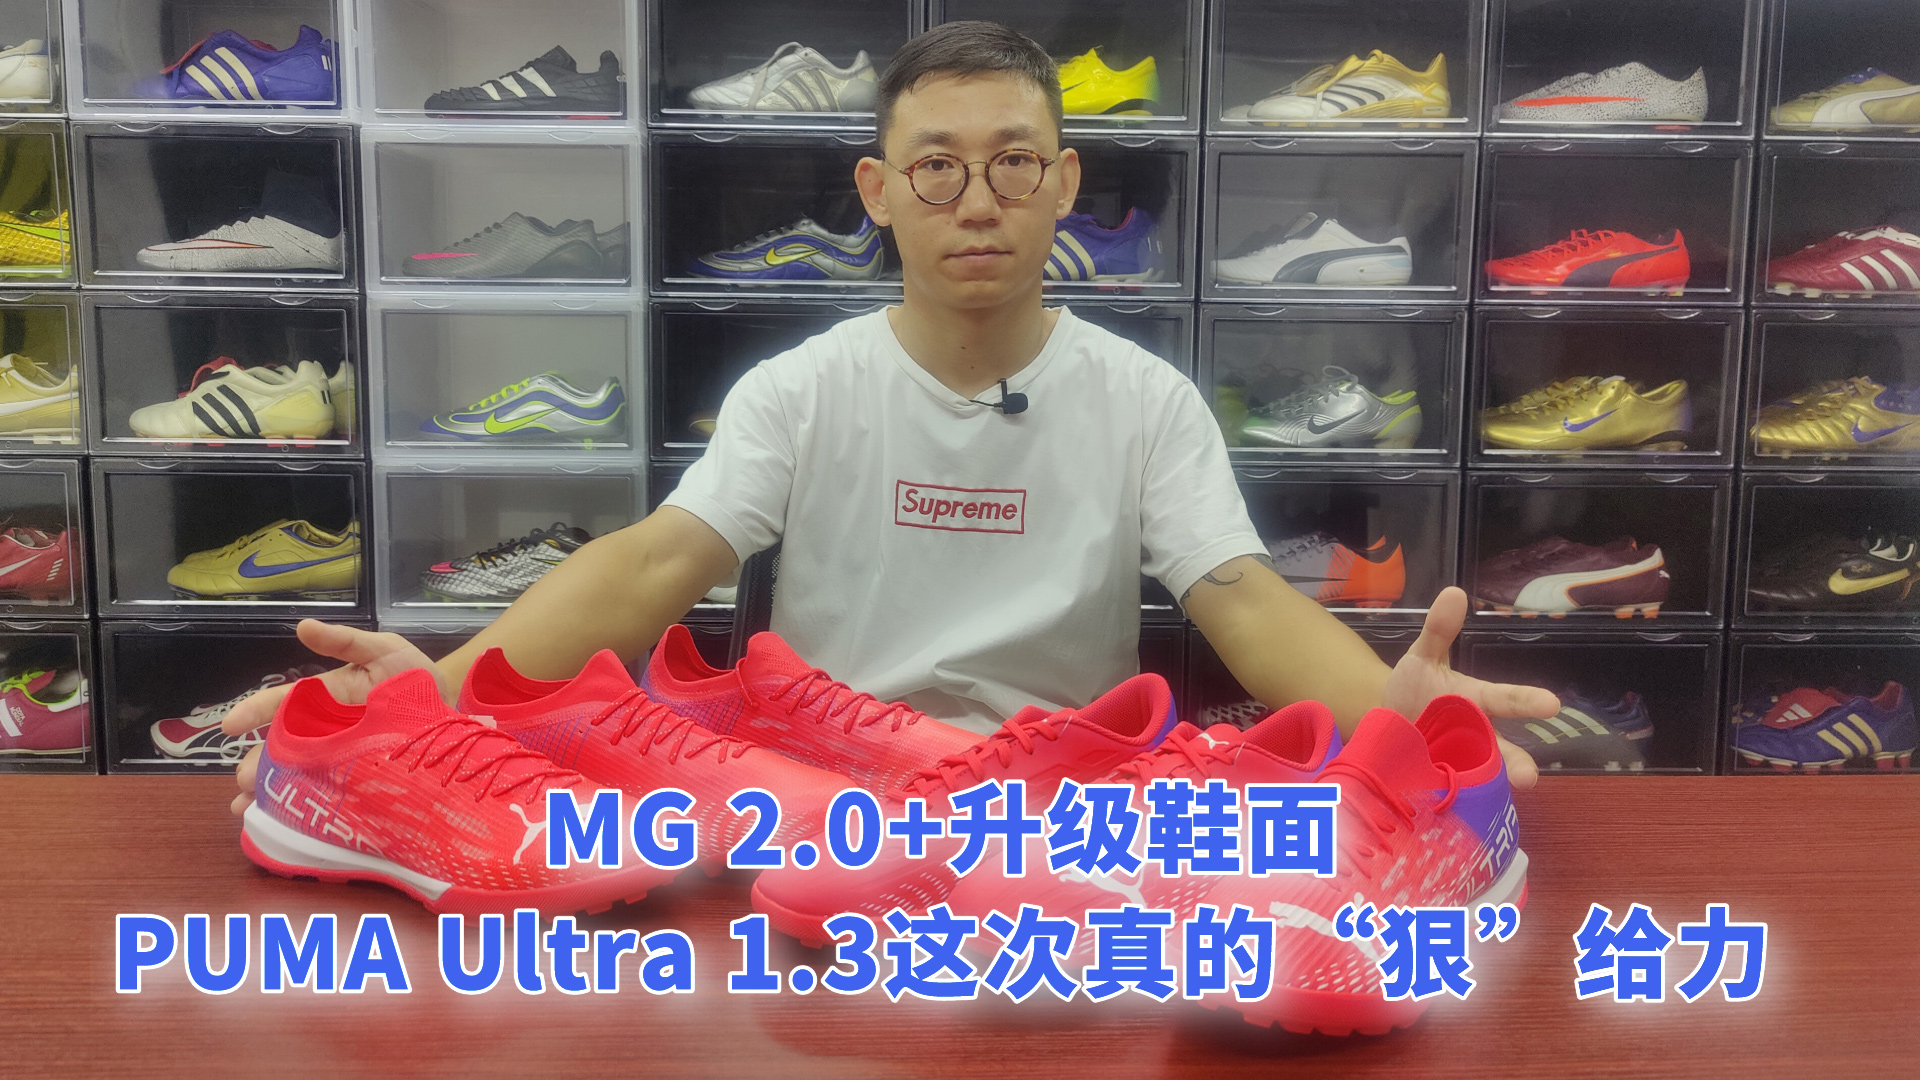 MG 2.0+升级鞋面 PUMA Ultra 1.3这次真的“狠”给力